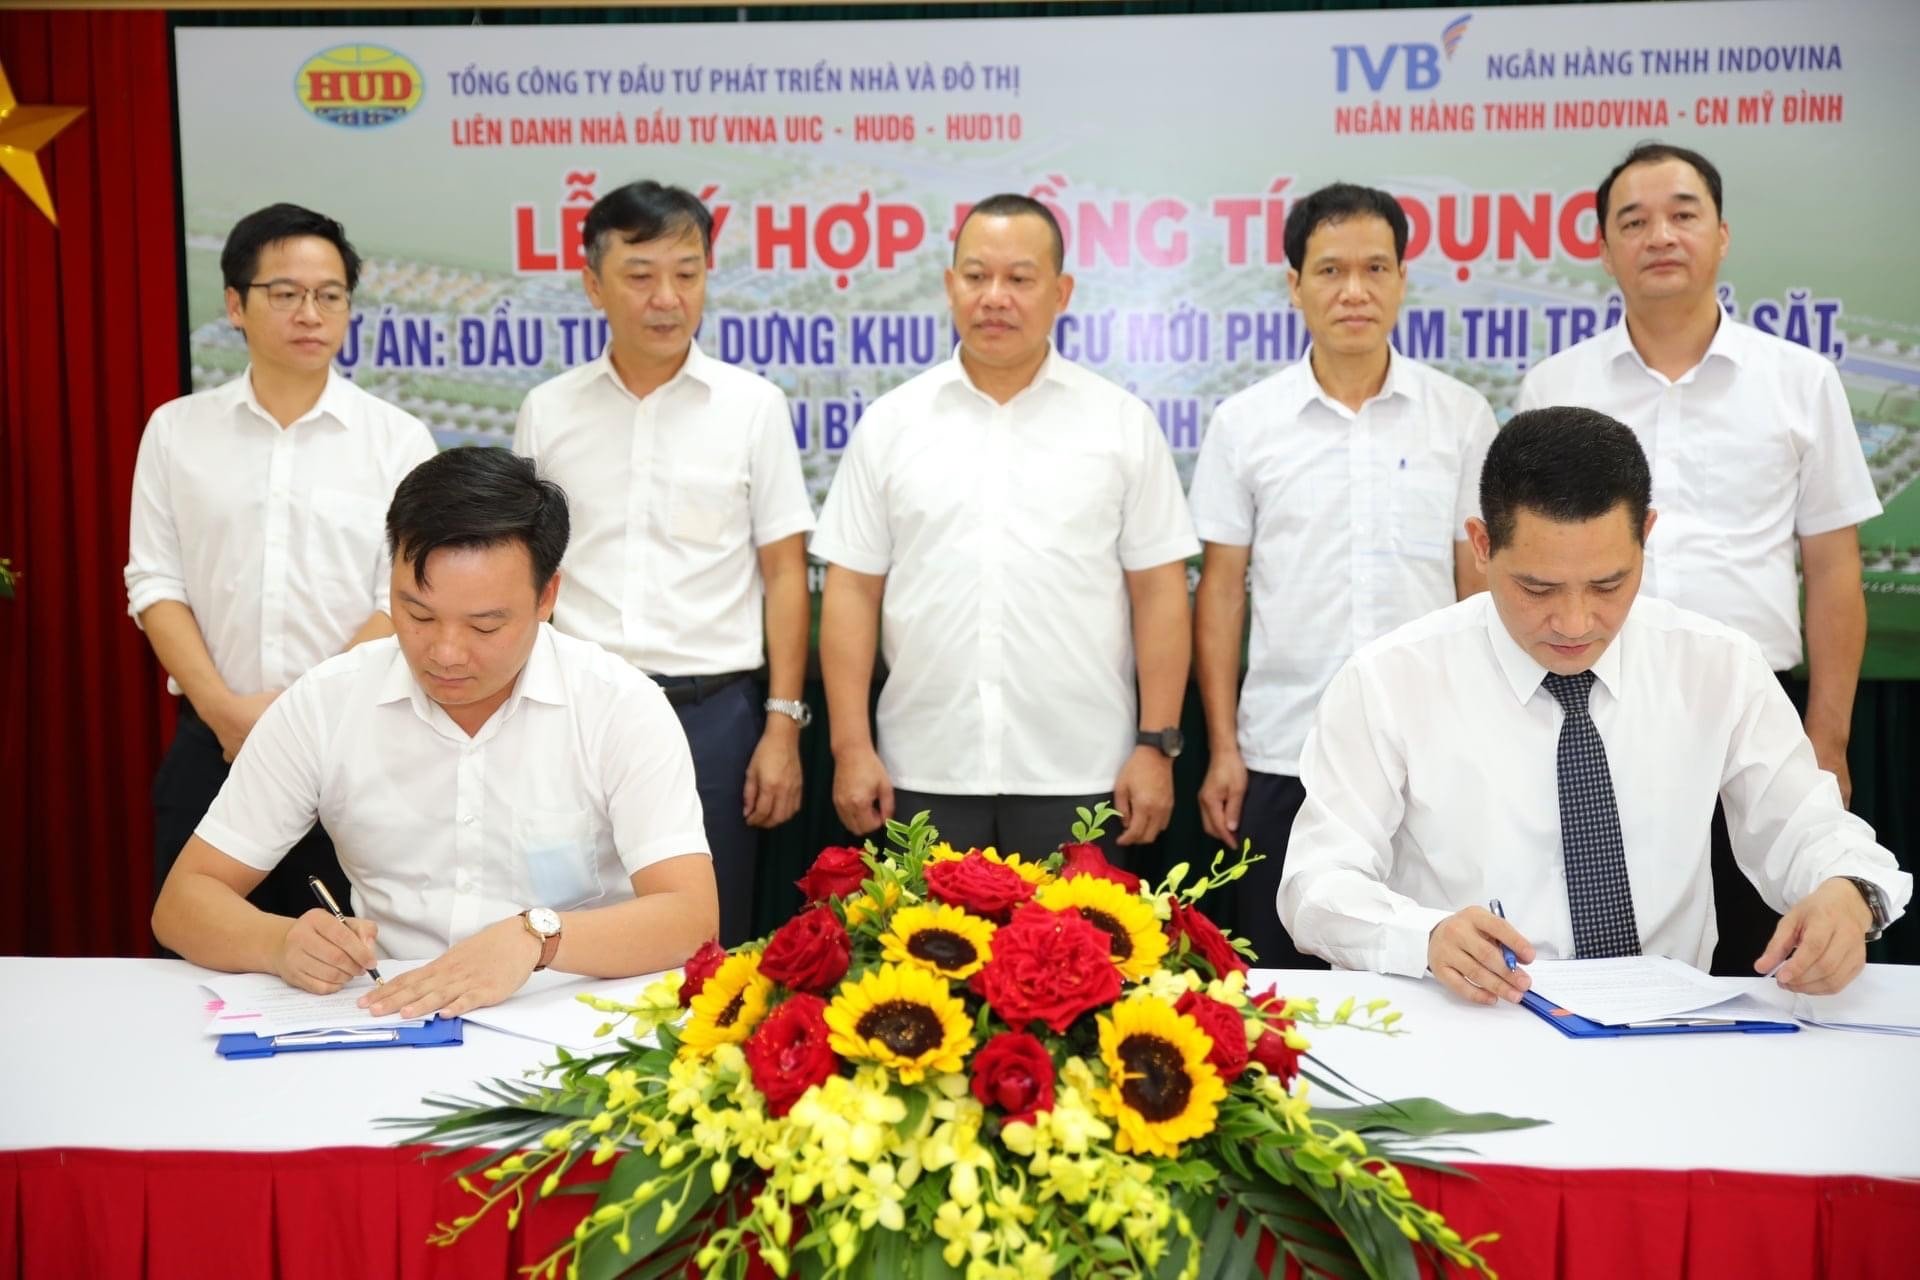 Liên danh VINA UIC - HUD6 - HUD10 và Ngân hàng IVB ký kết hợp đồng tín dụng triển khai Dự án: Đầu tư xây dựng Khu dân cư mới phía Nam thị trấn Kẻ Sặt, huyện Bình Giang.